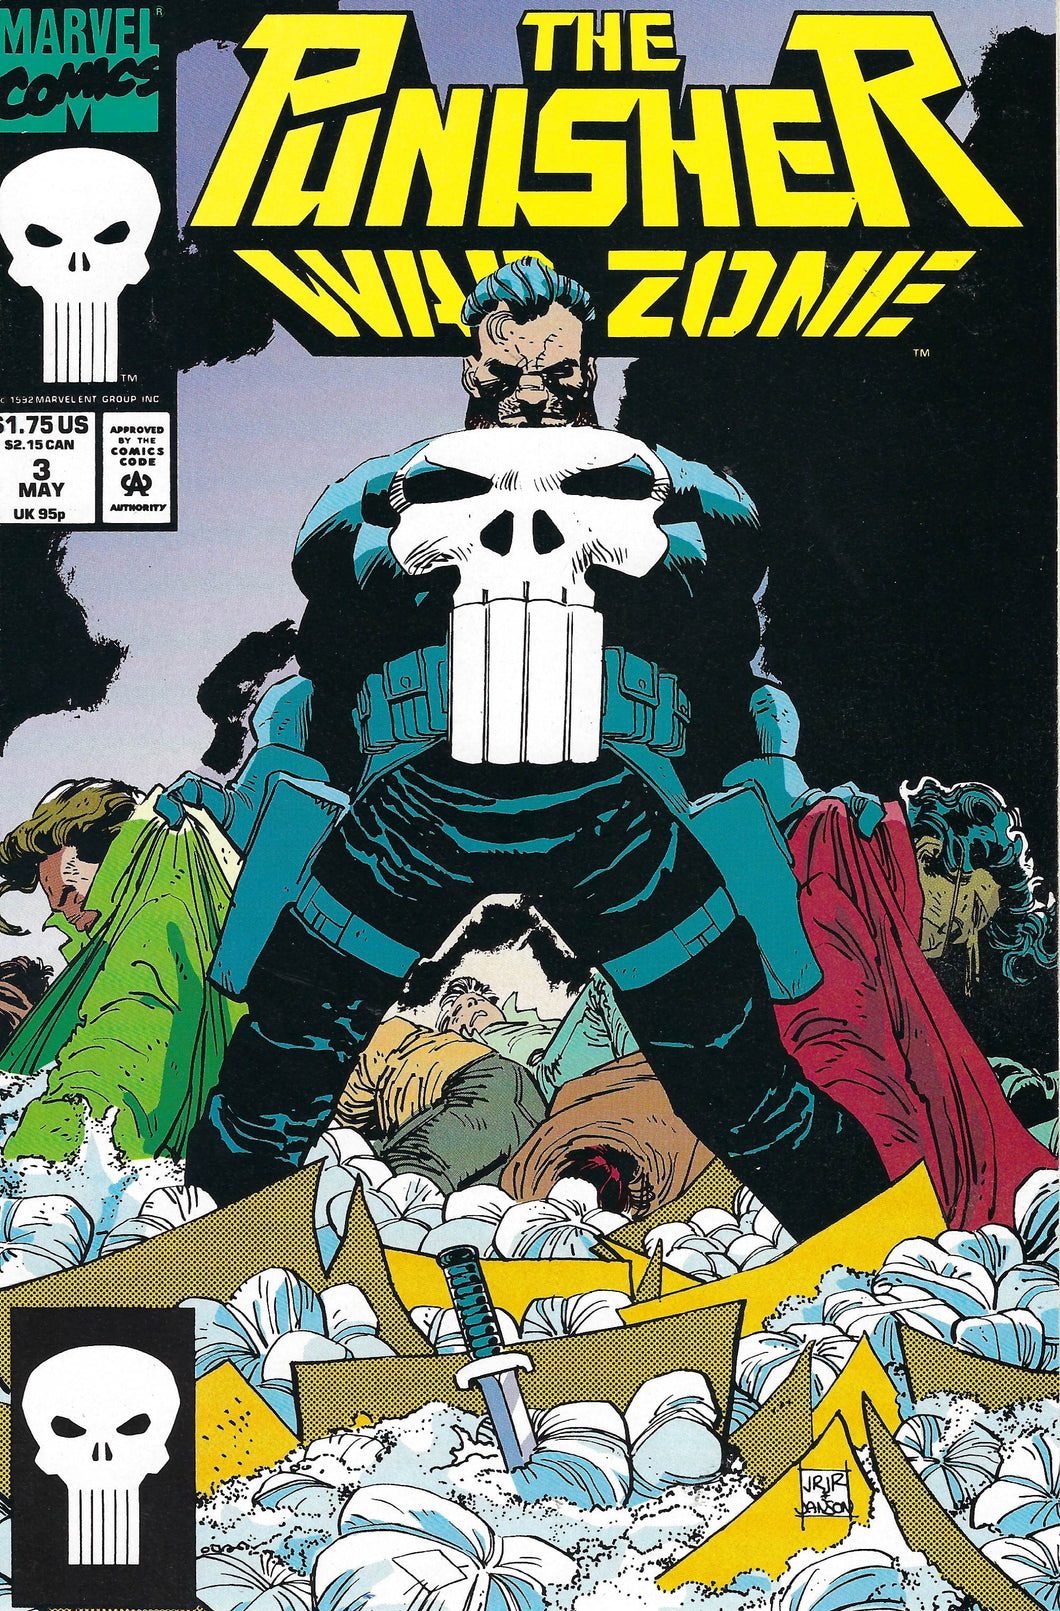 The Punisher War Zone #3